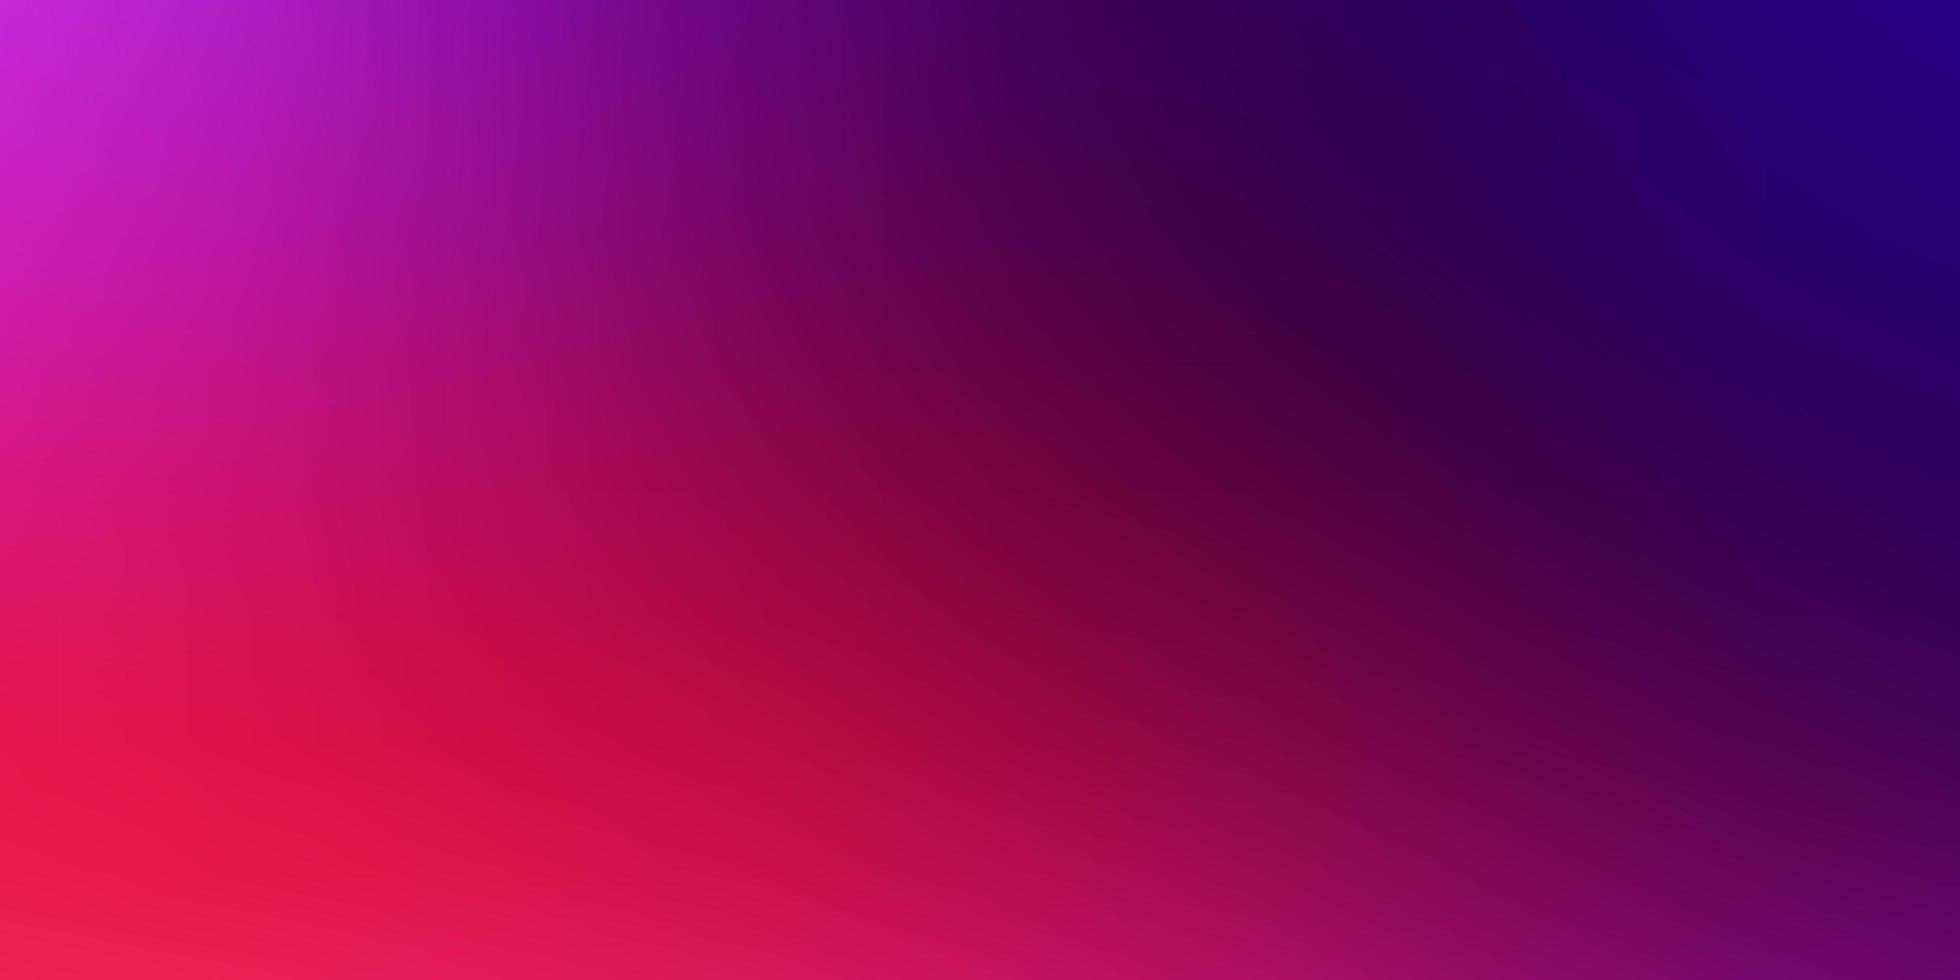 textura abstracta colorida del vector rosado claro, rojo.